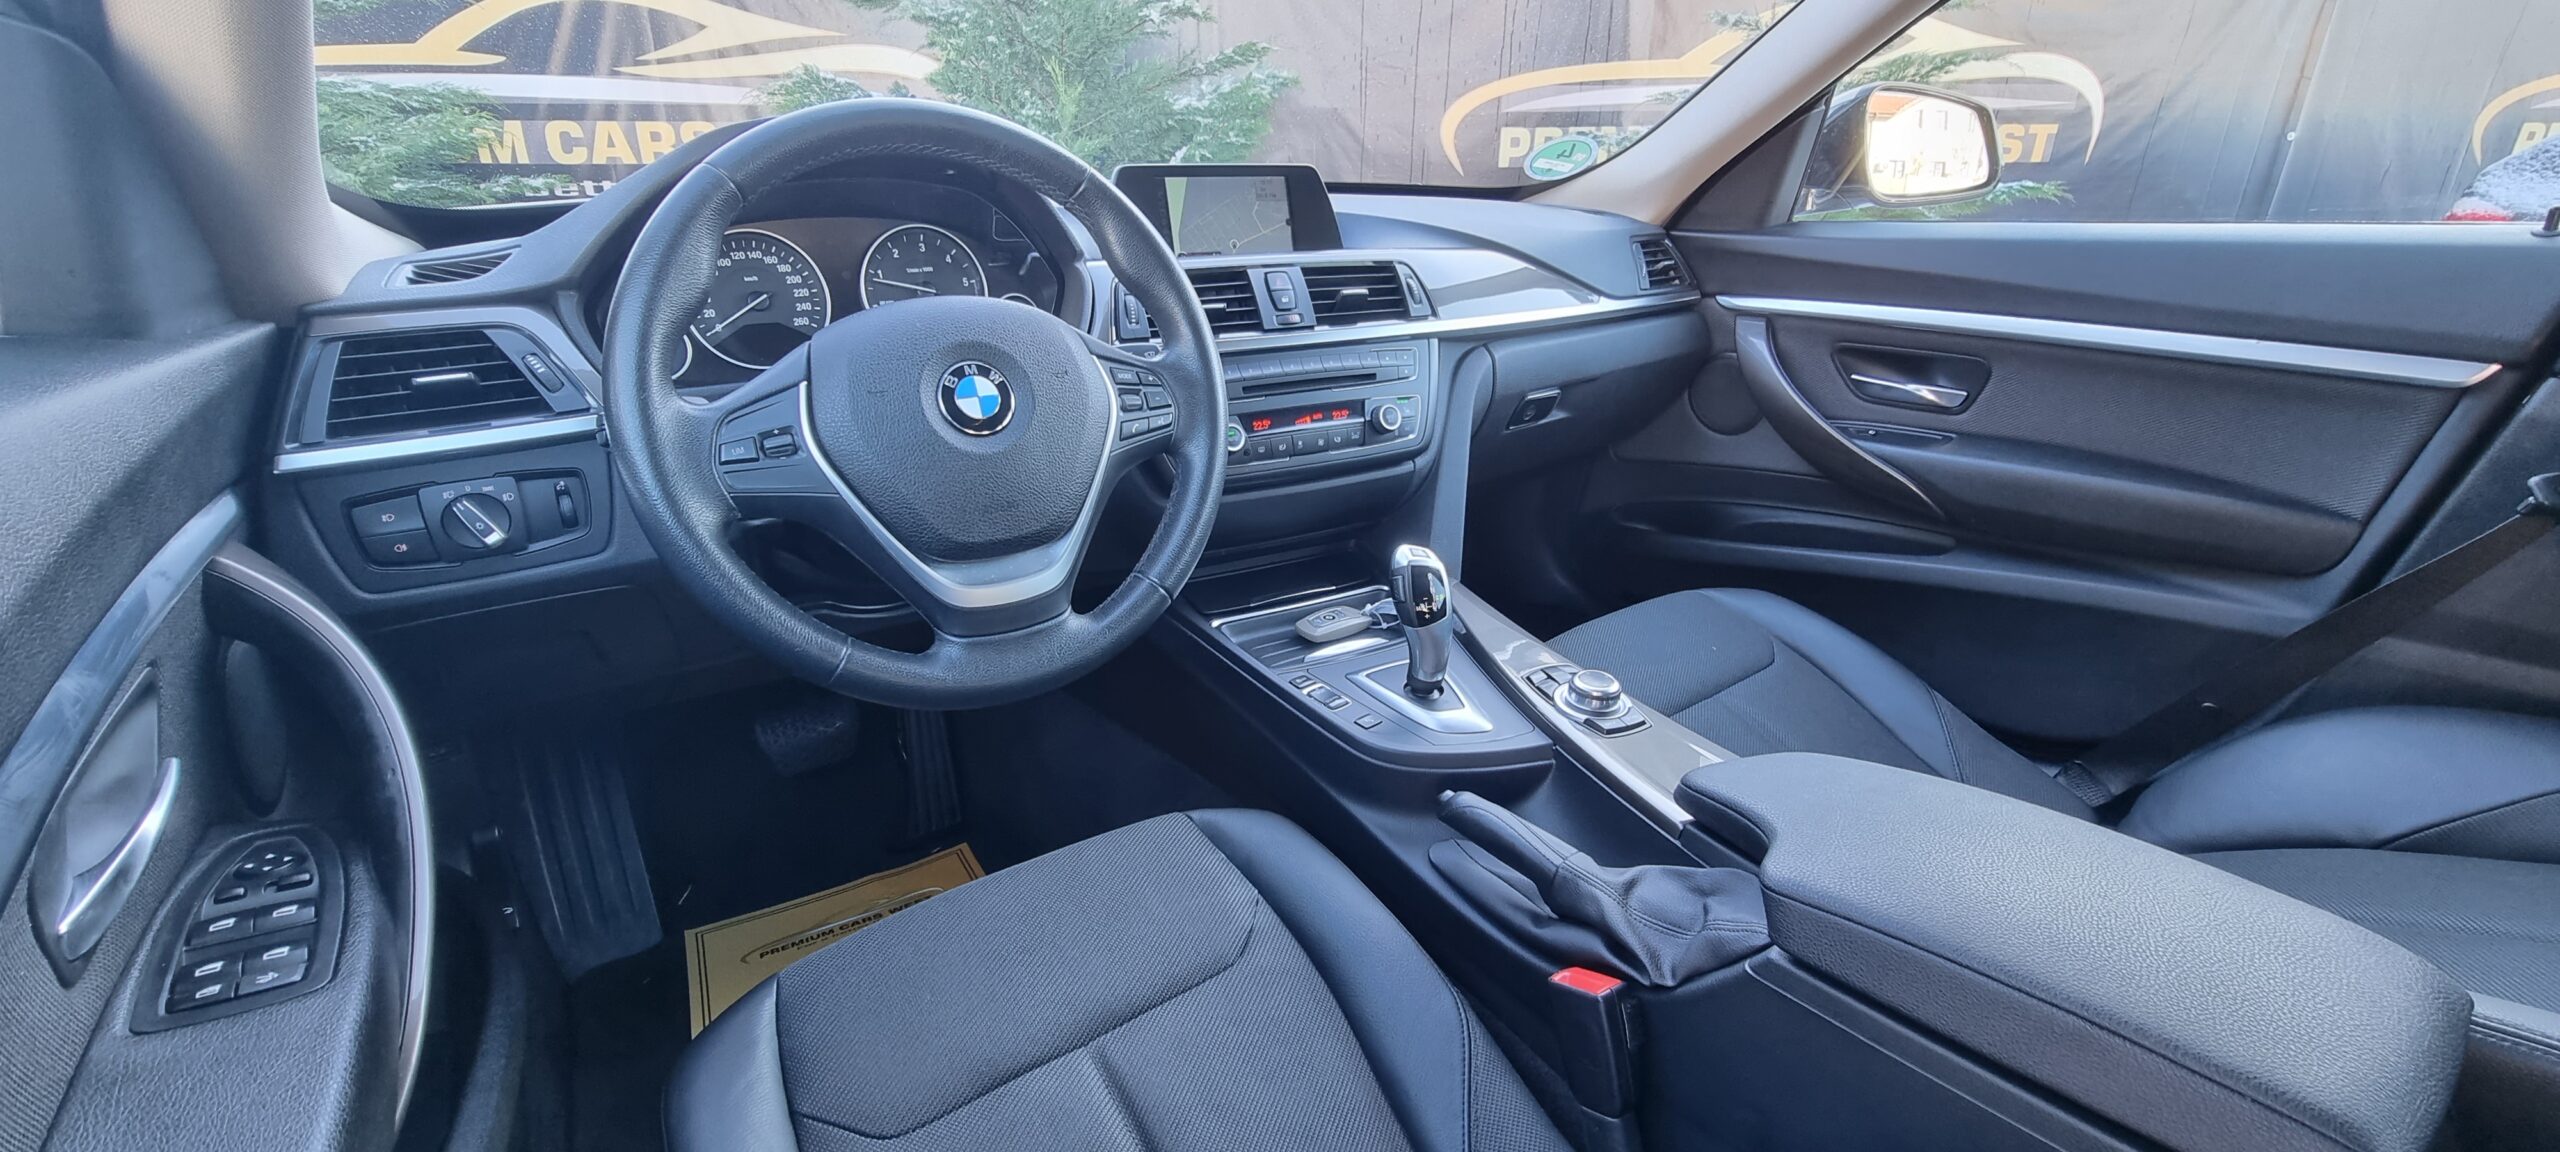 BMW 325 GT, 2.0 DIESEL, 218 CP, EURO 6, AN 2013